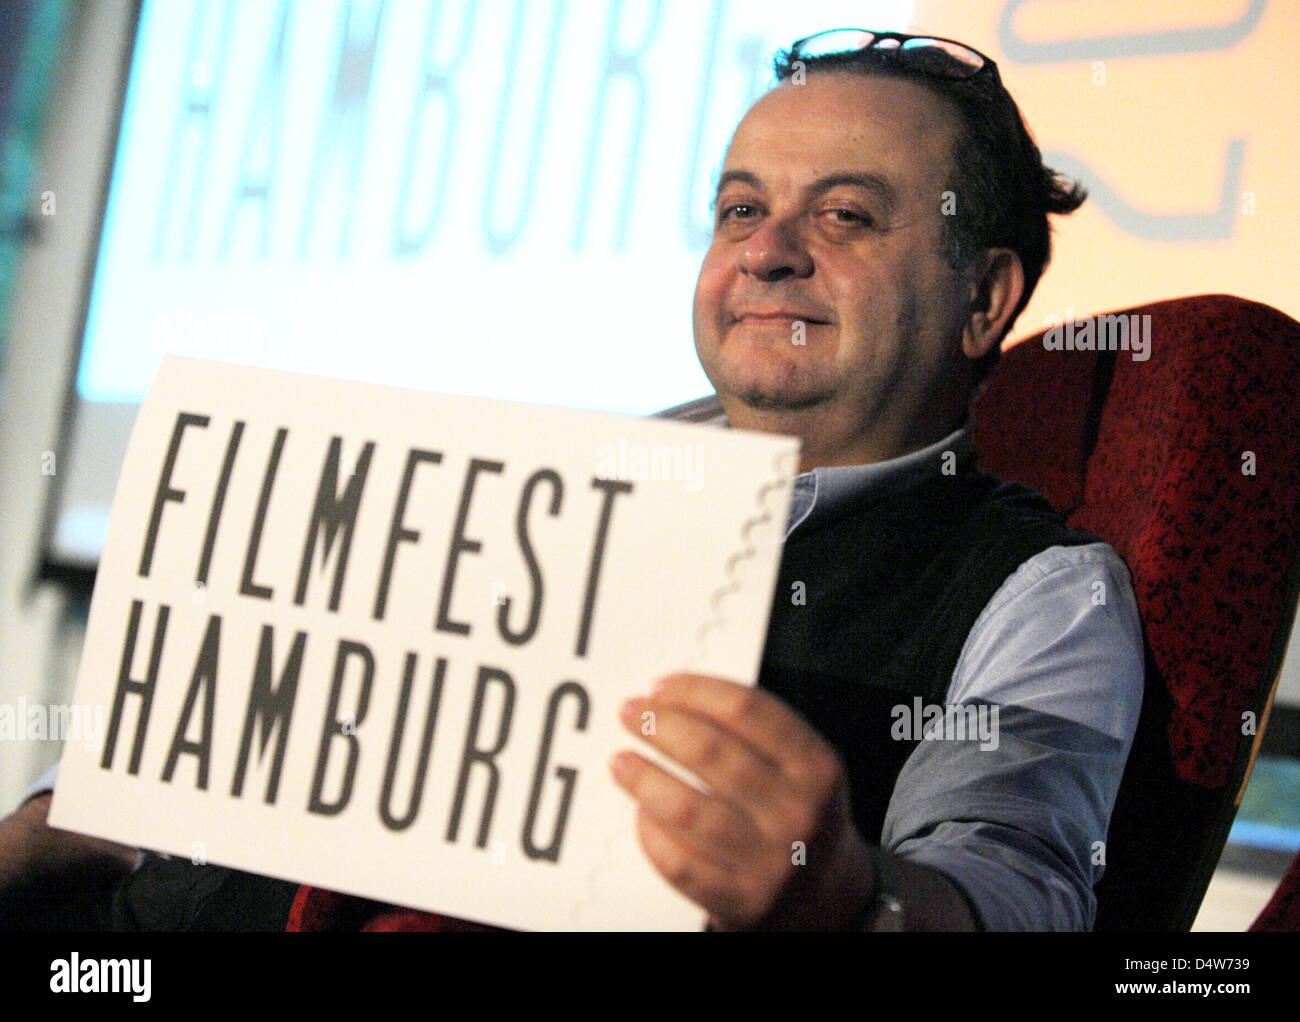 Testa del XVIII Hamburg Film Festival, Albert Wiederspiegel, pone con una cartella con la scritta 'Filmfest Hamburg' ad Amburgo, Germania, 14 settembre 2010. Con sei film, il festival mira a ricordare i Beatles, che hanno iniziato la loro carriera mondiale 50 anni fa nella città anseatica. Con essa, la polizia domcumentation " arrivo dei Beatles in Hamburg' del 1966 viene presentata a Foto Stock